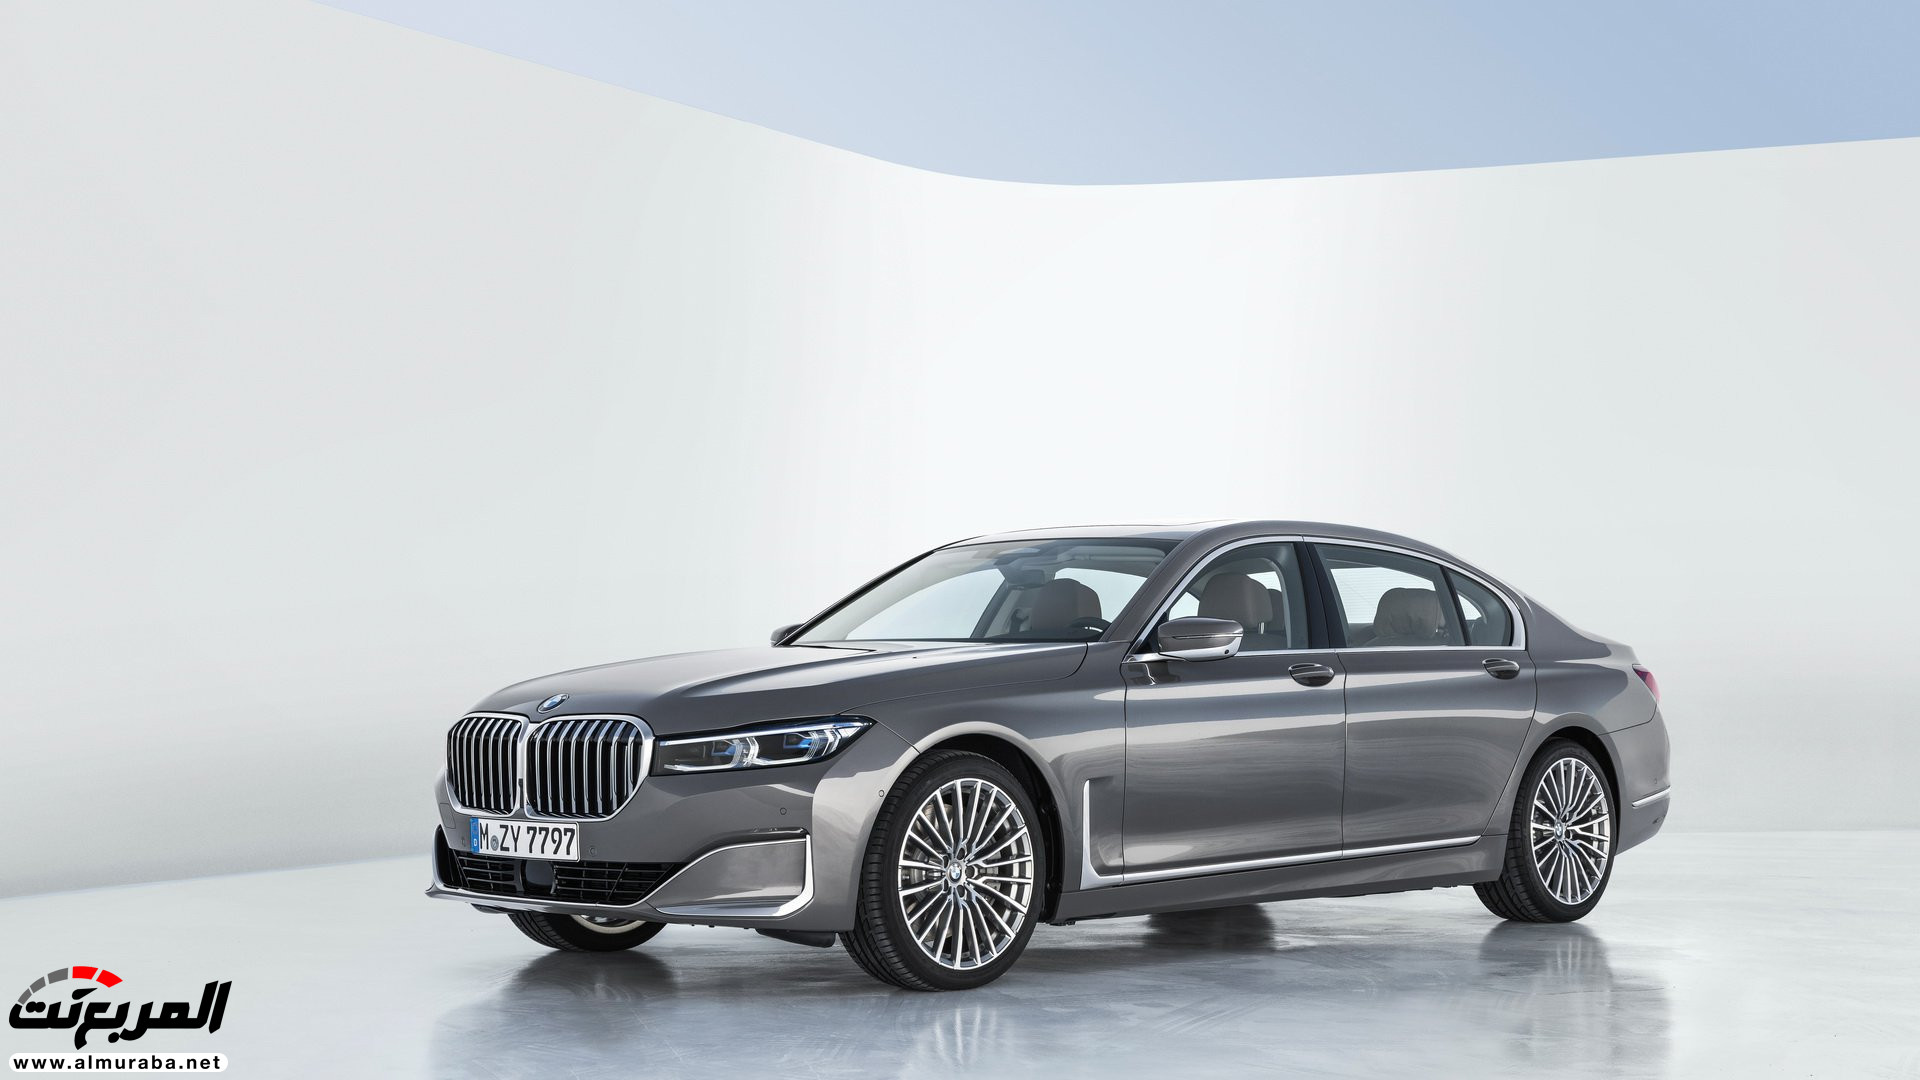 بي ام دبليو الفئة السابعة 2020 المحدثة تكشف نفسها رسمياً "صور ومواصفات" BMW 7 Series 283